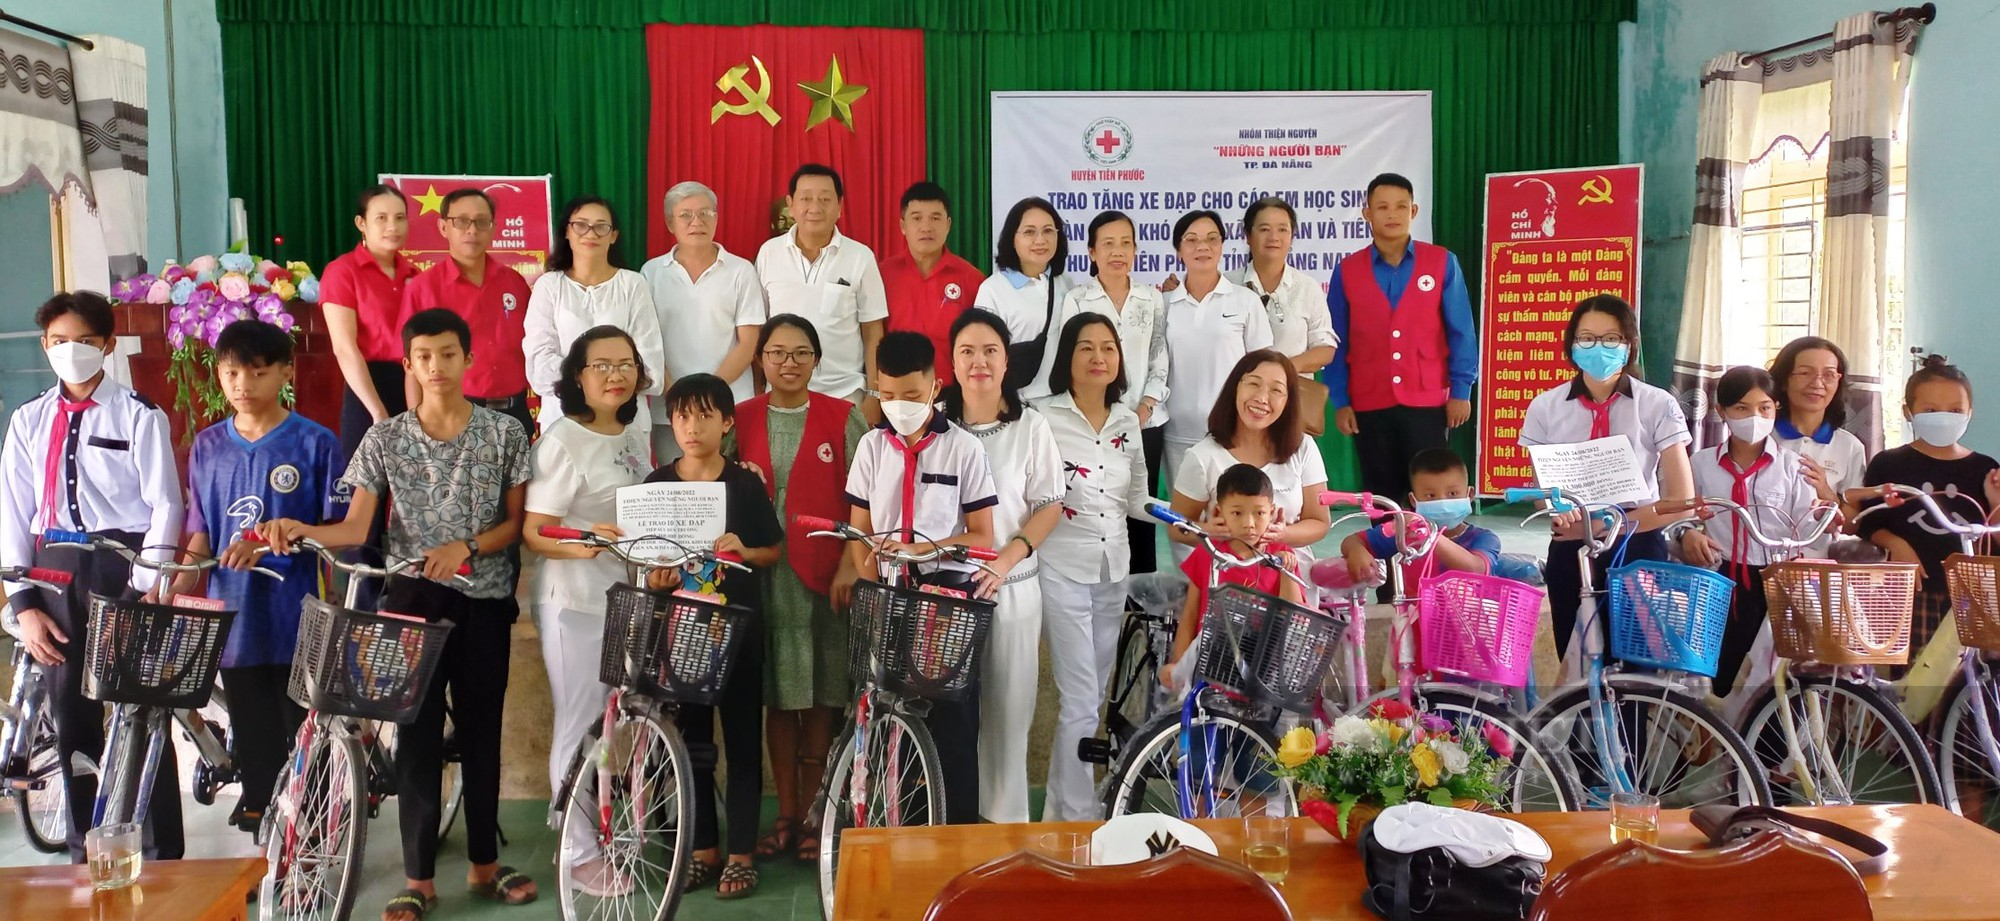 Quảng Nam: Trao nhà tình nghĩa và 10 xe đạp trước thèm năm học mới cho học sinh khó khăn - Ảnh 2.